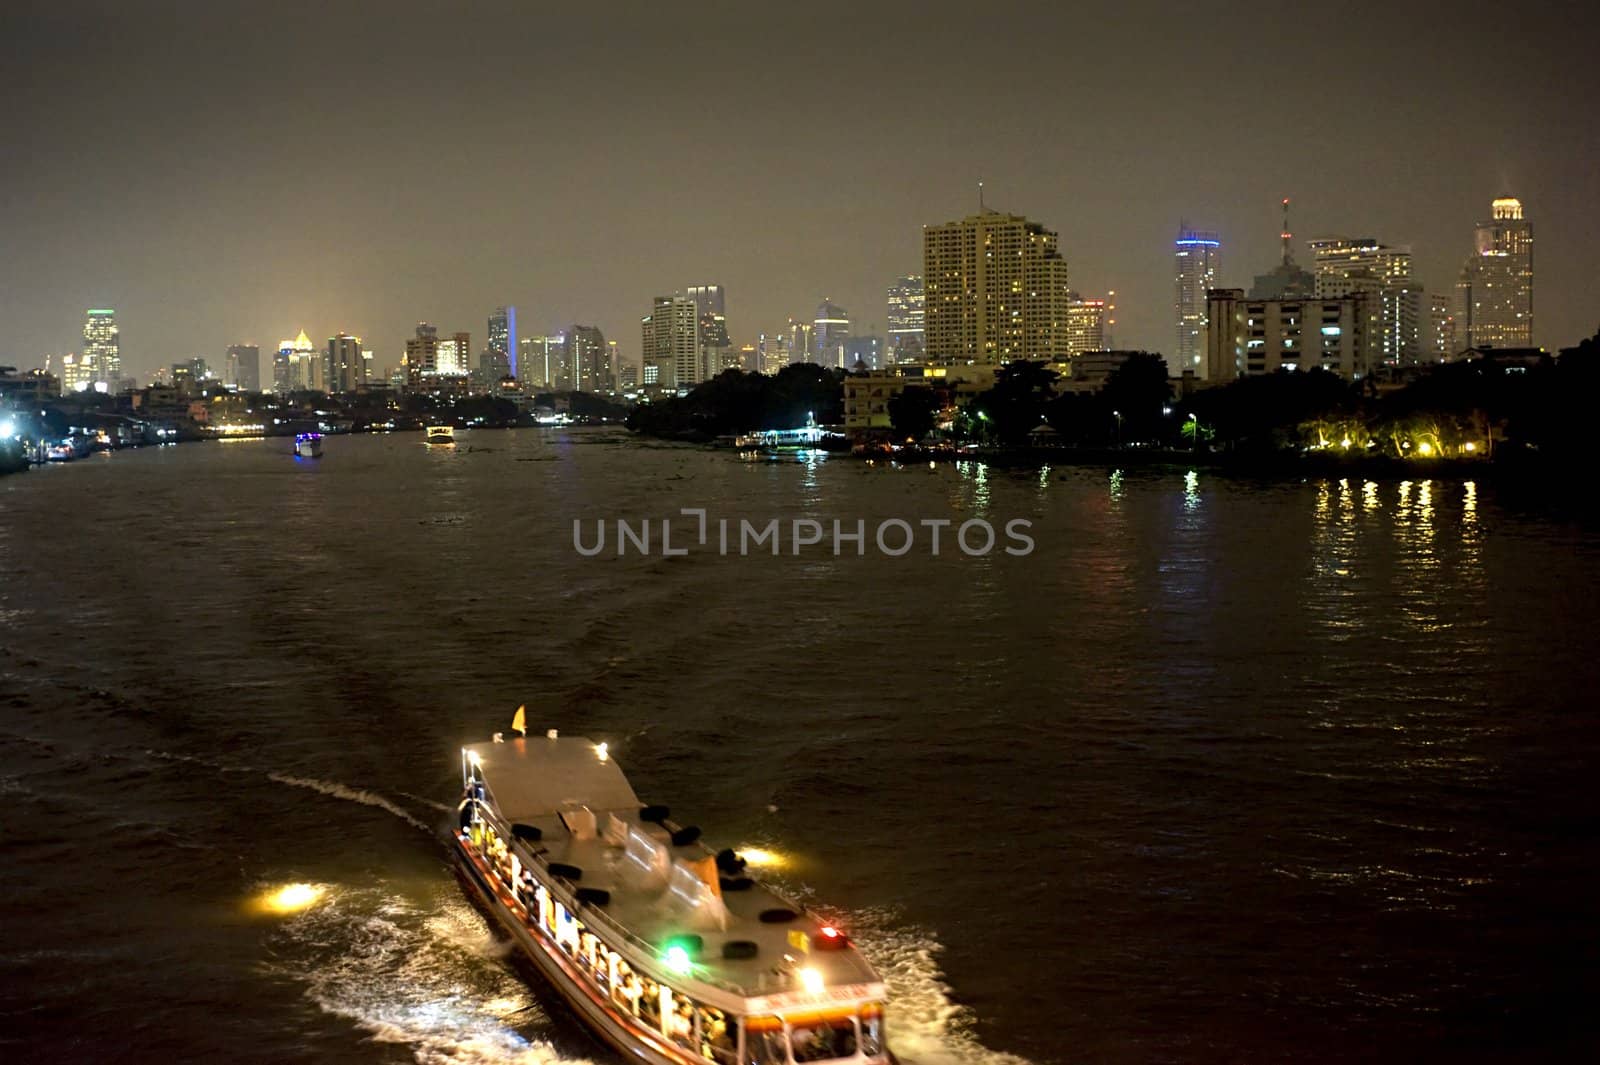 Bangkok at night by joyfull